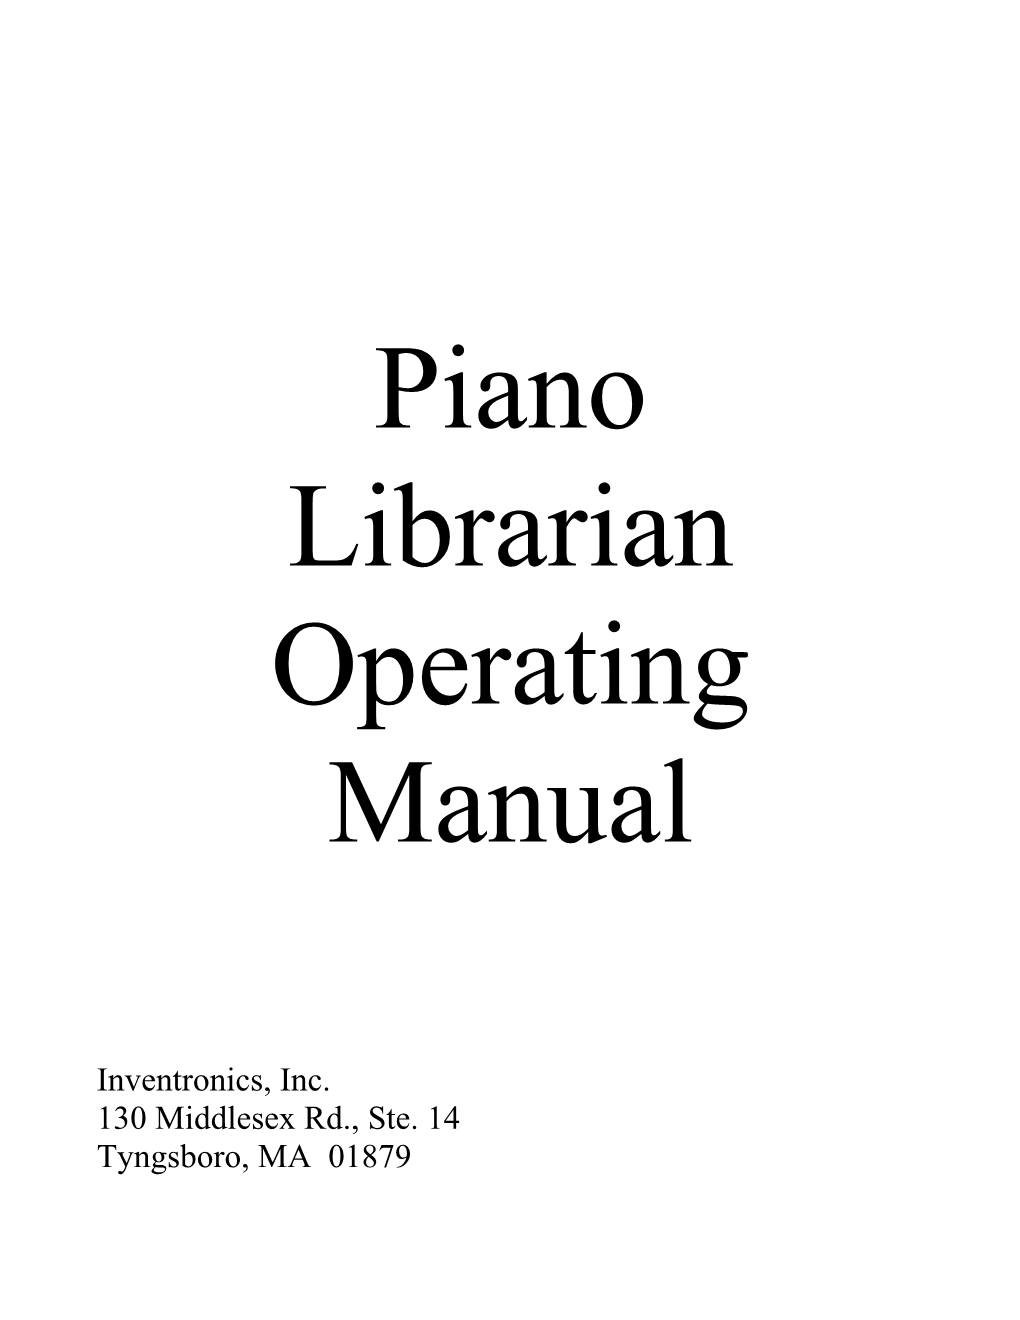 Piano Librarian Operating Manual